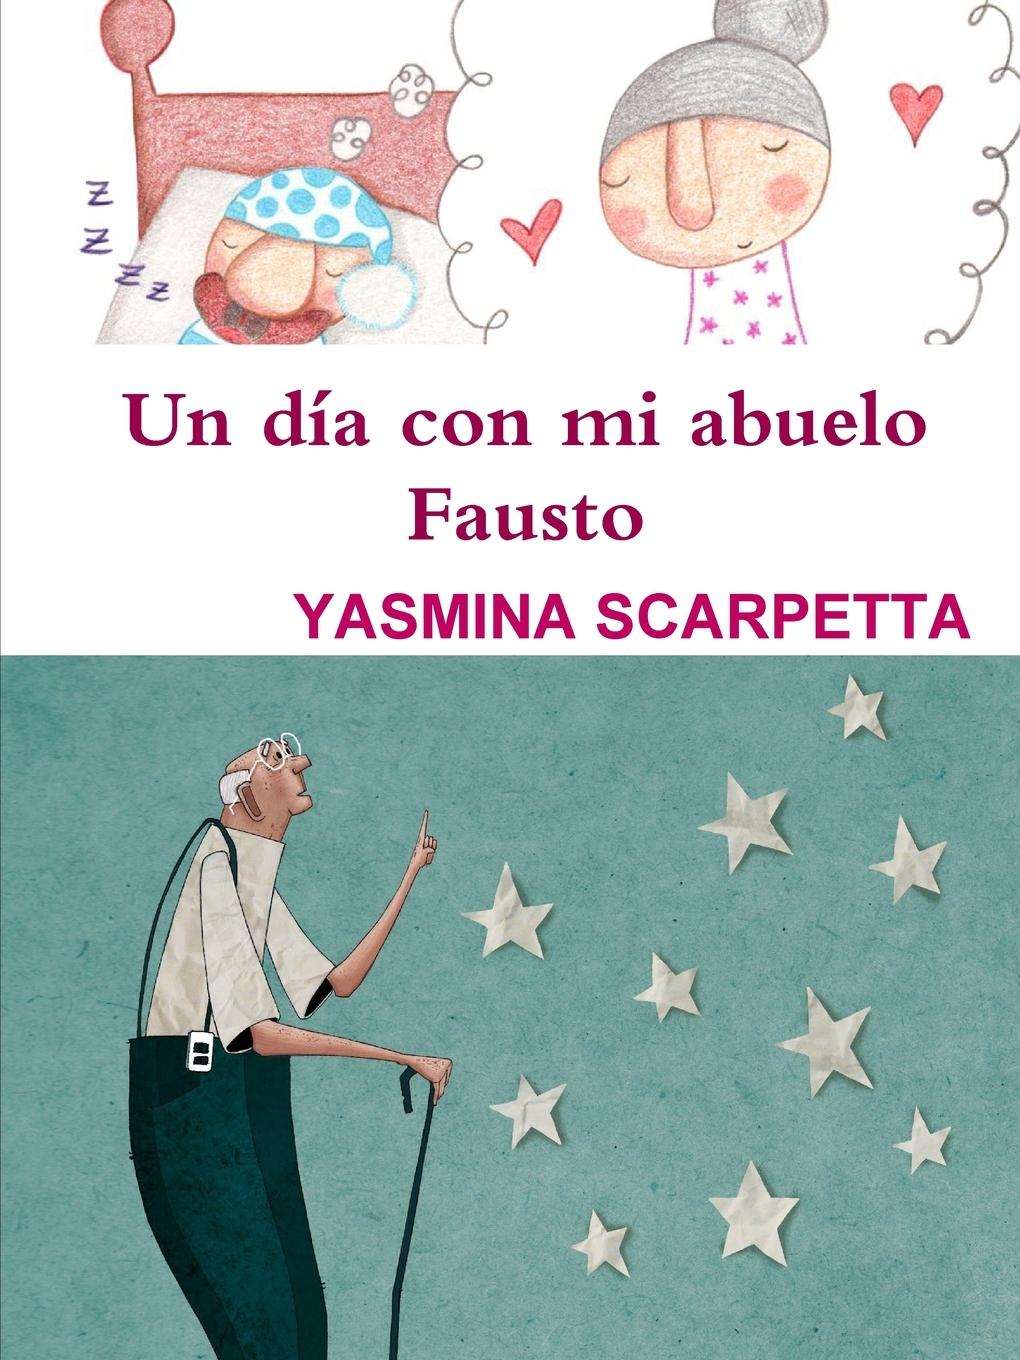 Un día con mi abuelo Fausto - Scarpetta, Yasmina